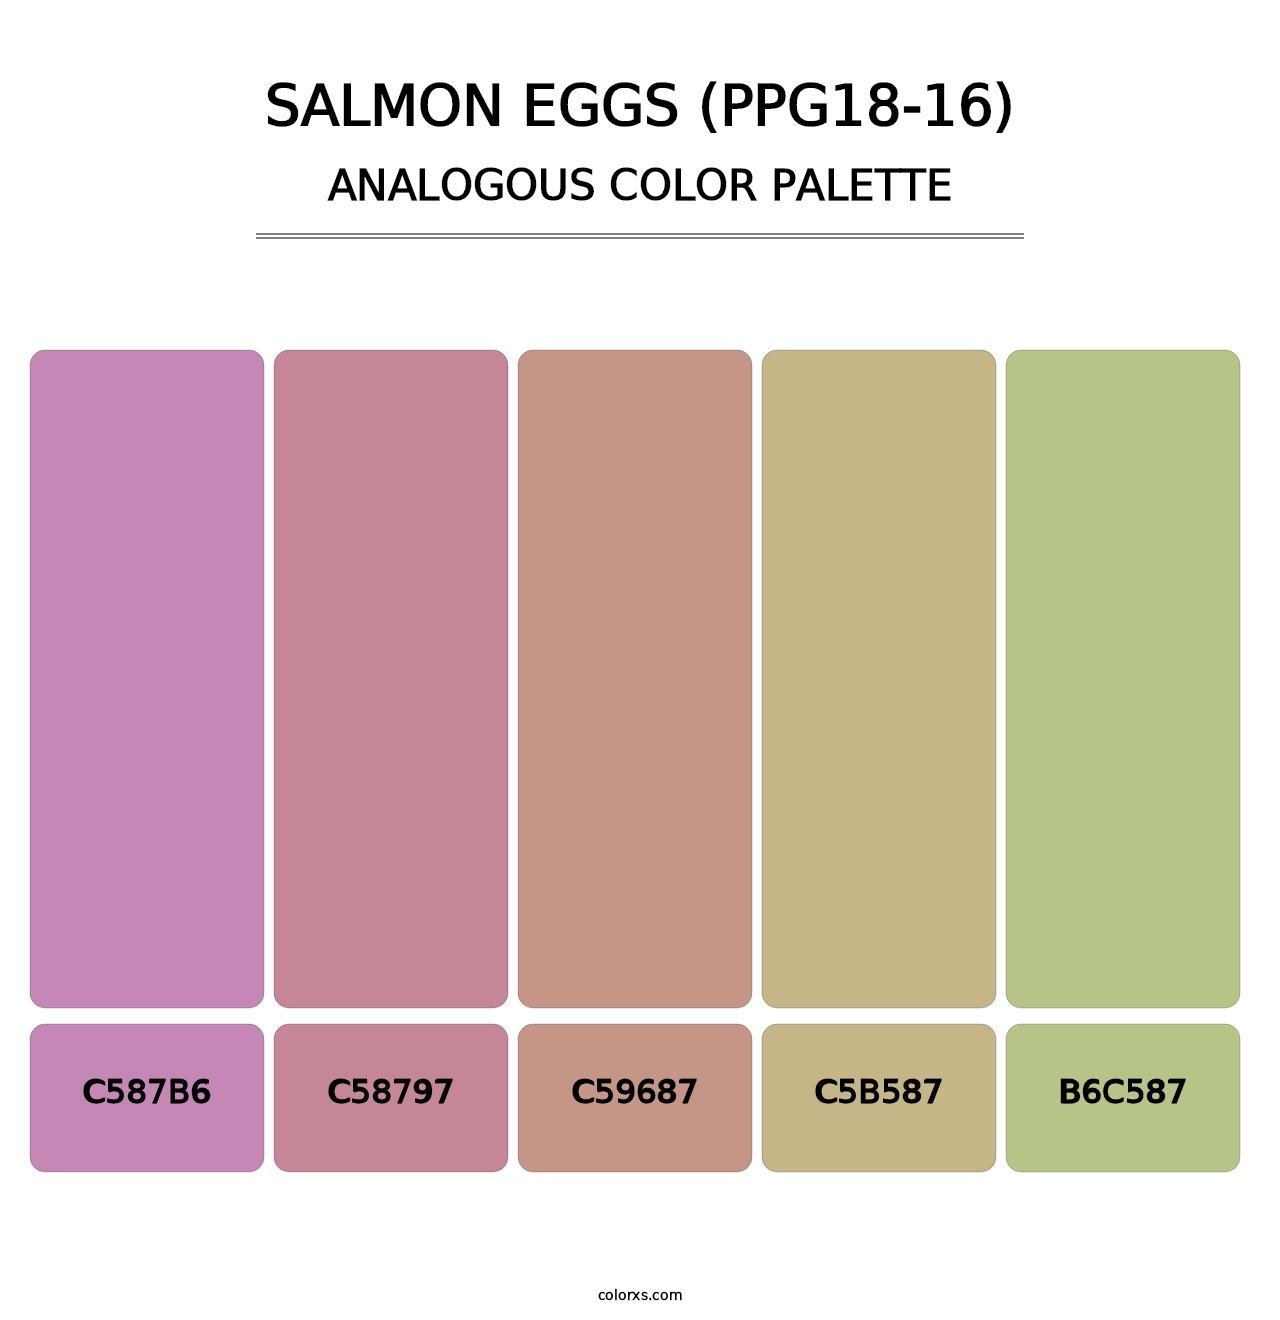 Salmon Eggs (PPG18-16) - Analogous Color Palette